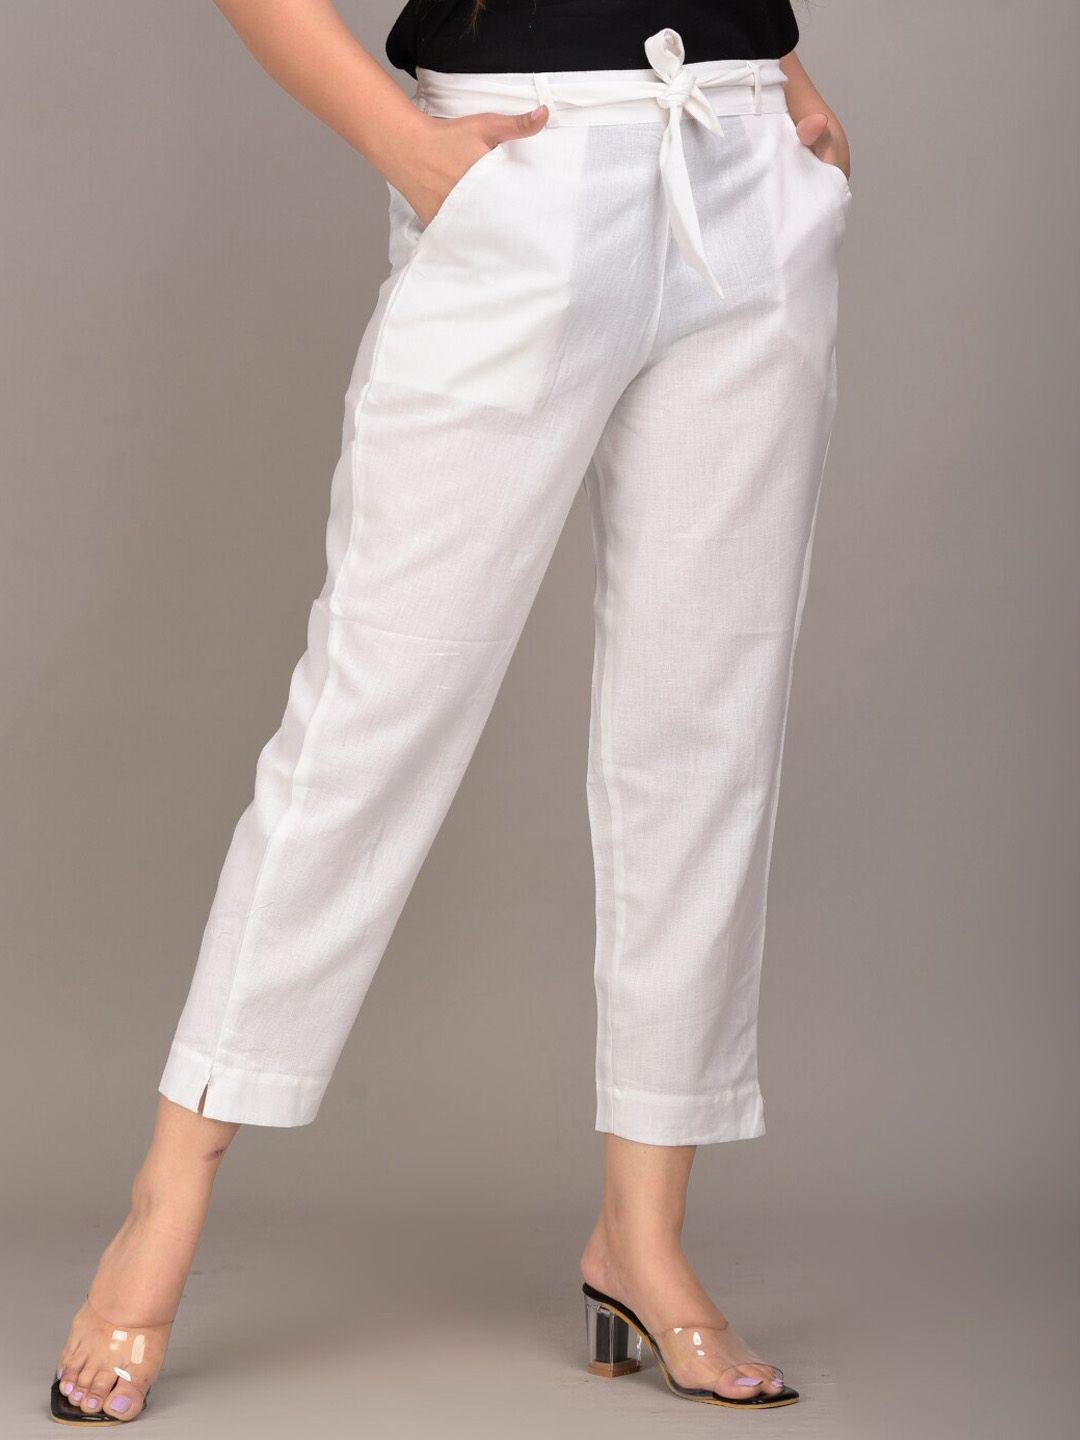 iqraar women white slim fit trousers